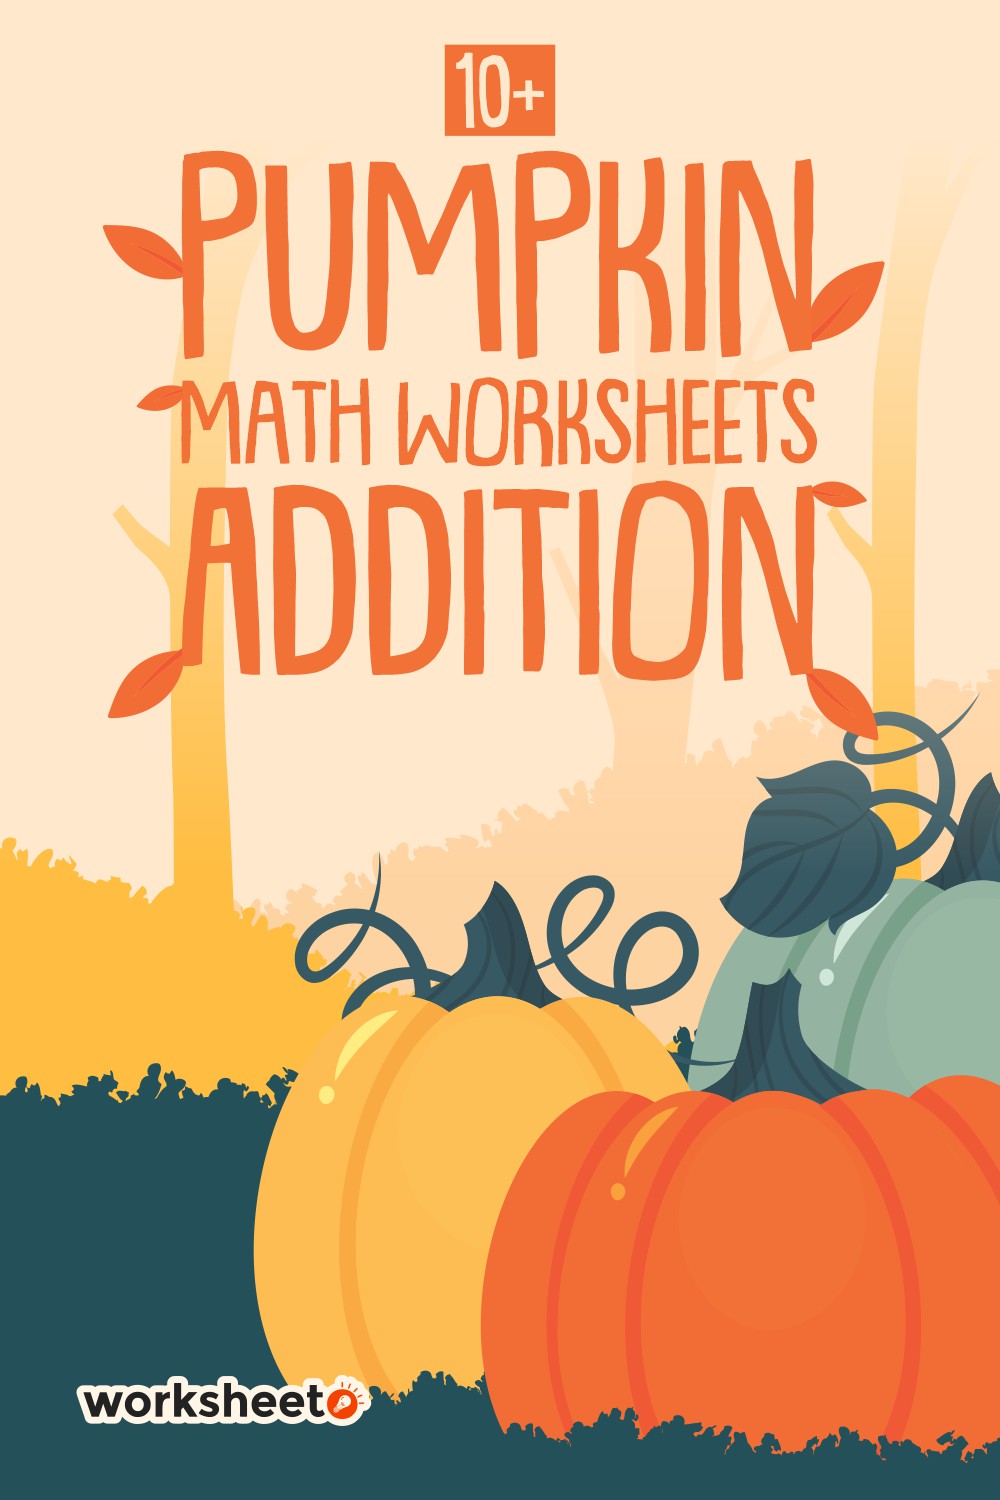 free-5th-grade-math-worksheets-mashup-math